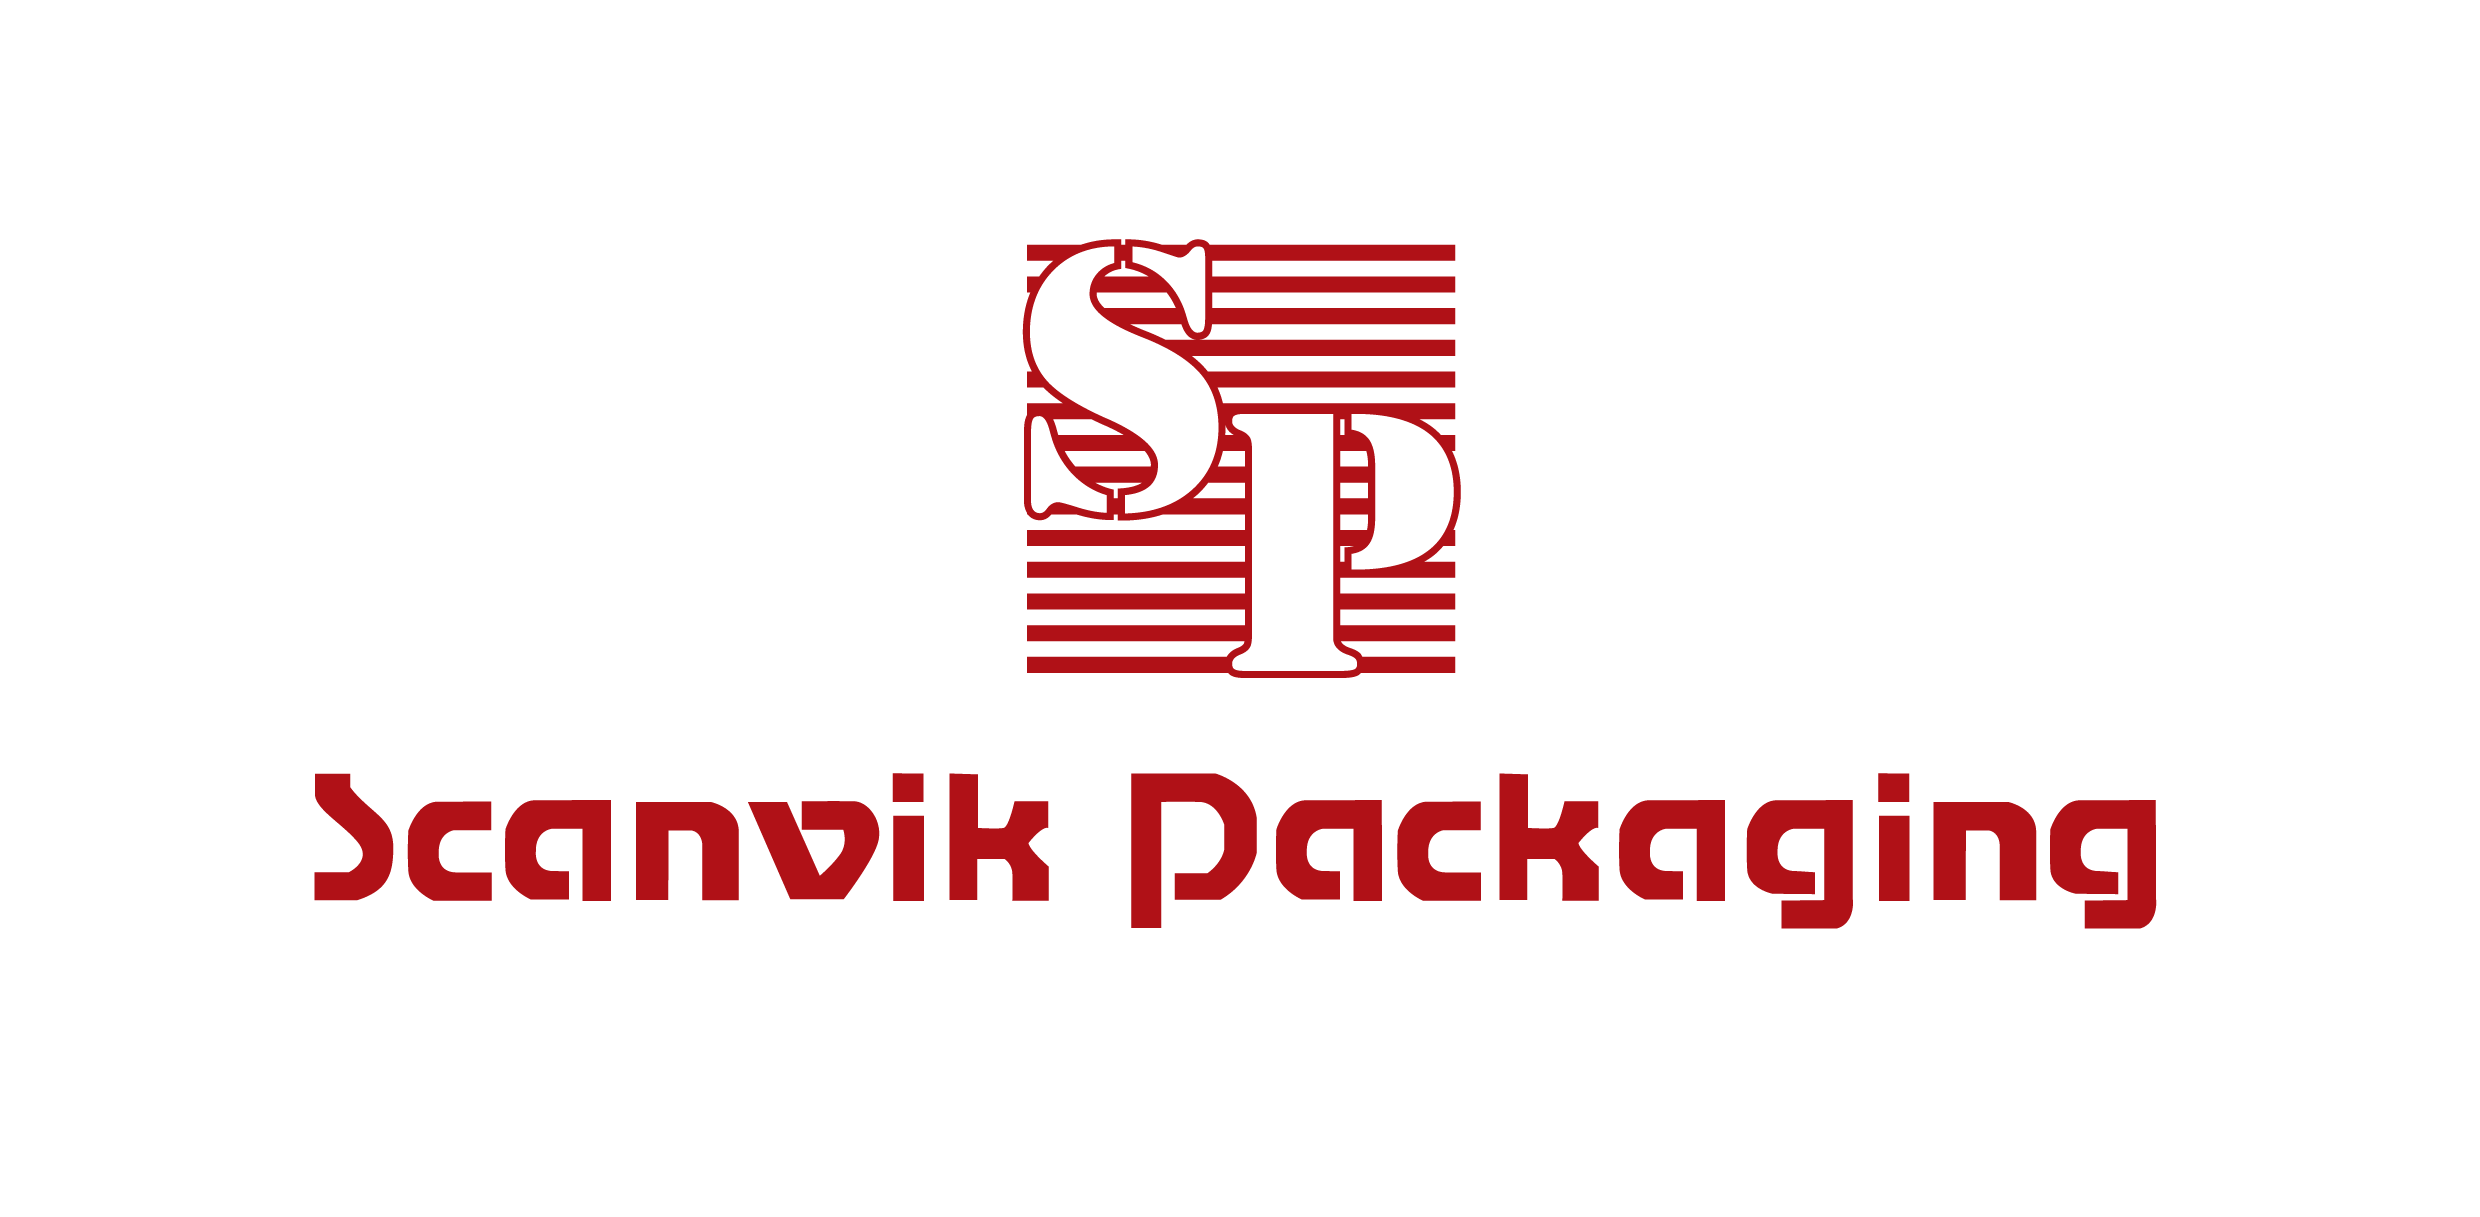 Scanvik Packaging